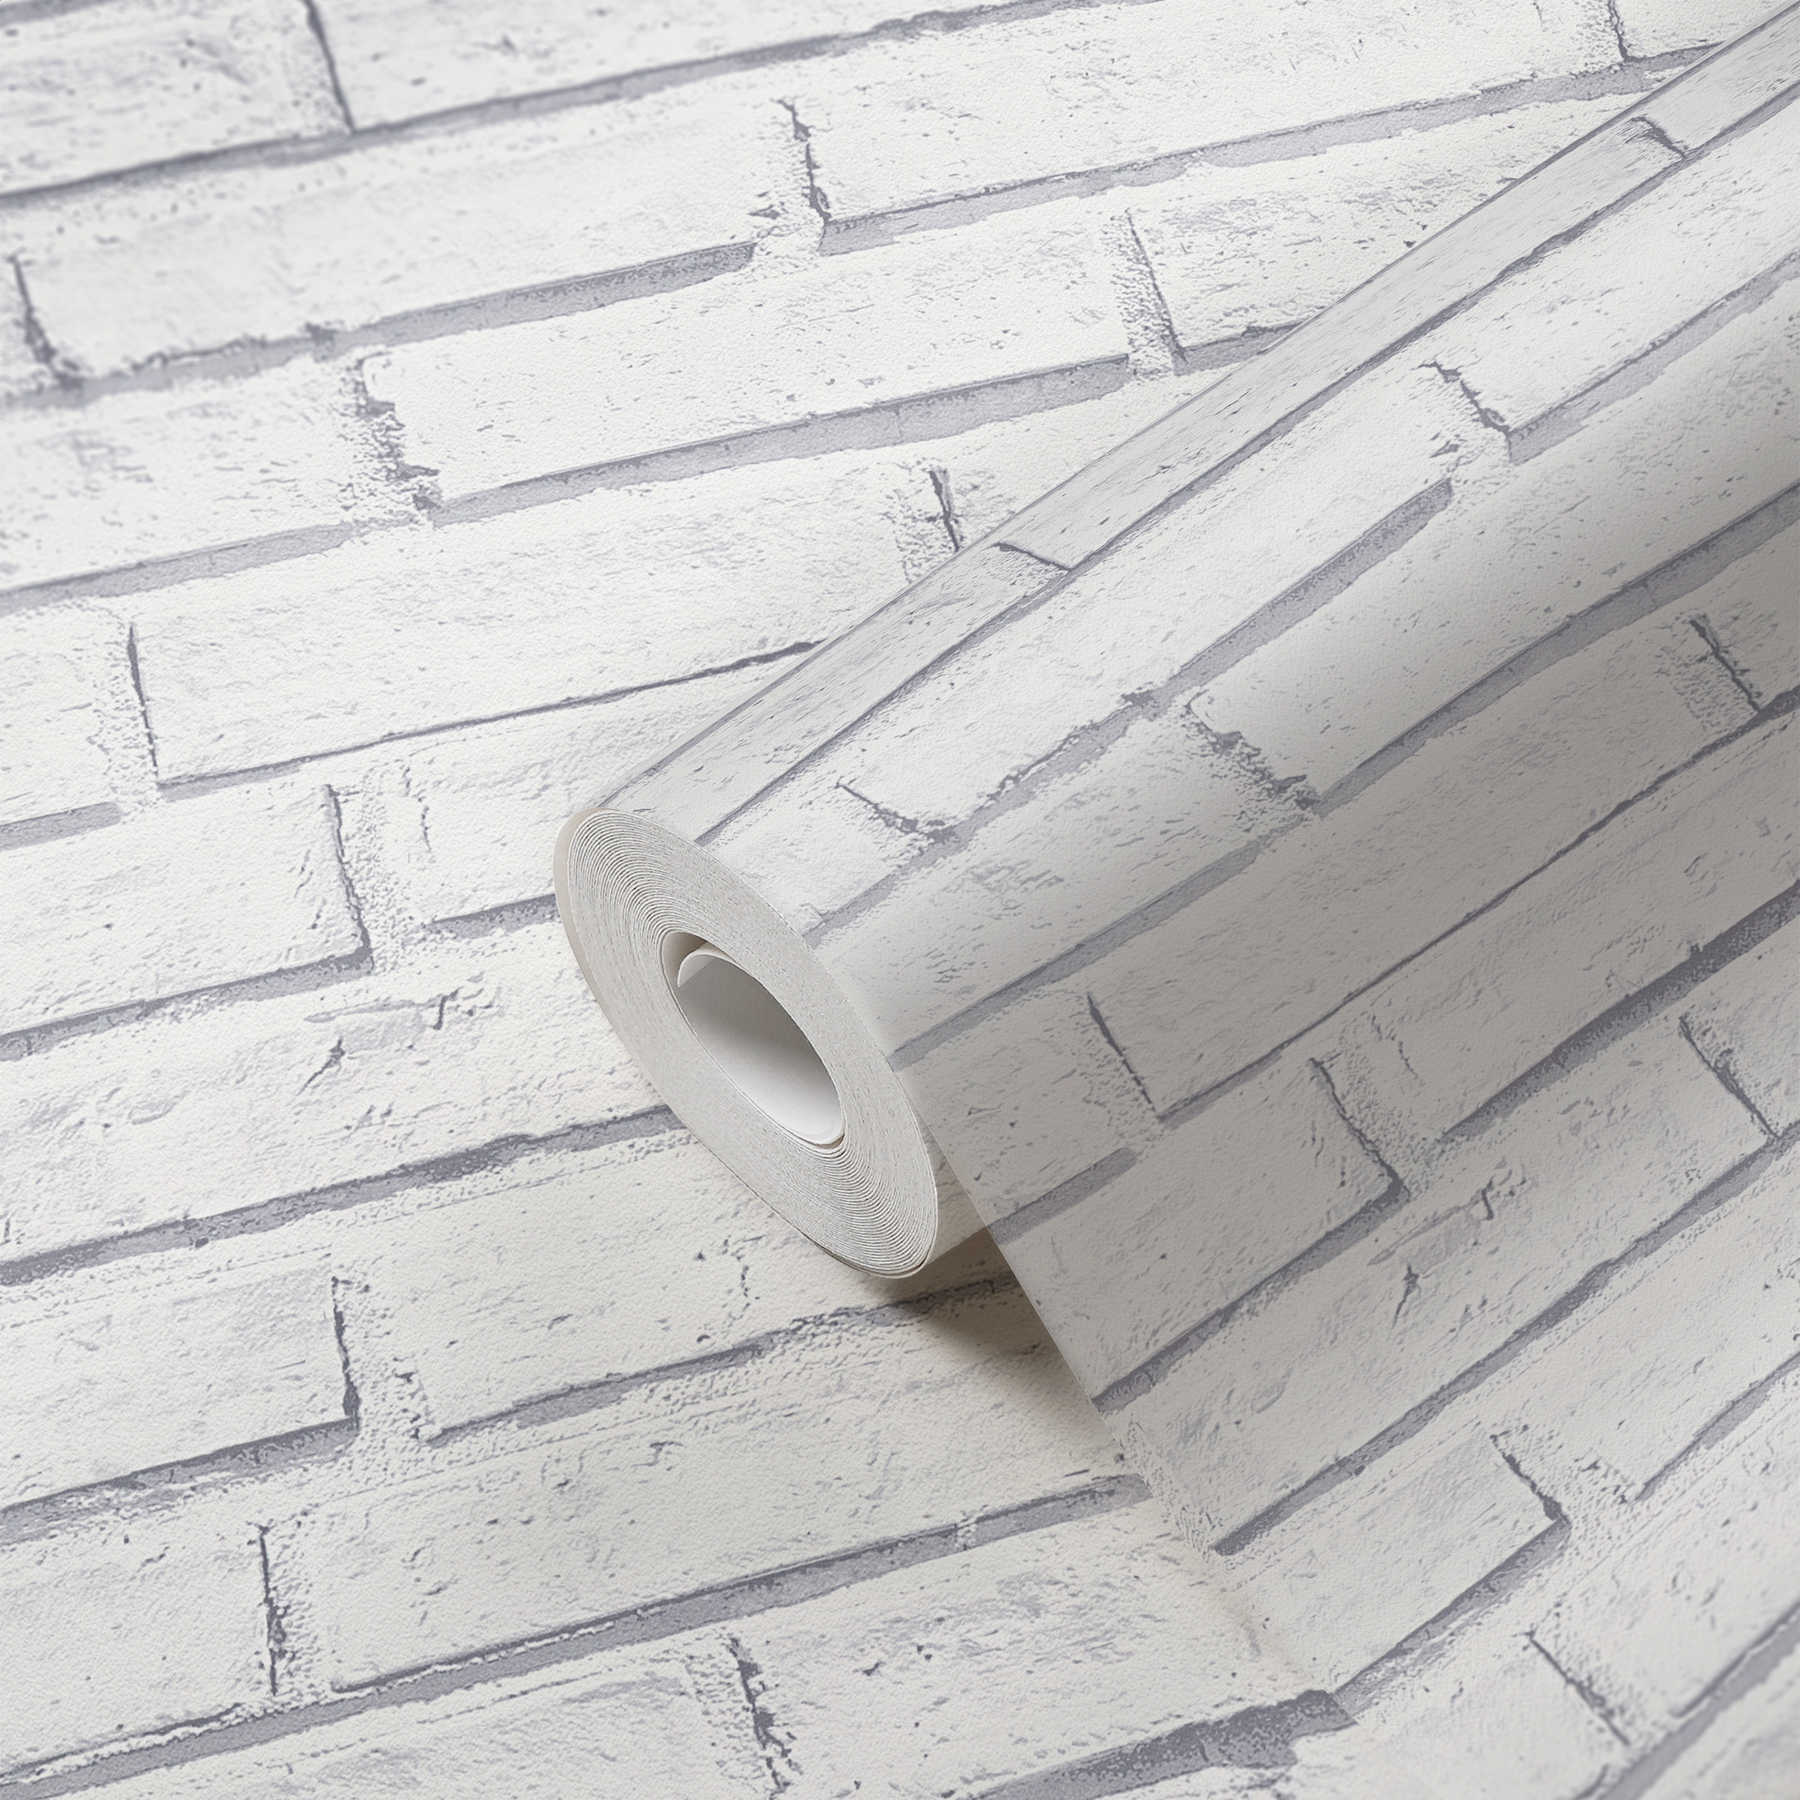             Mauerwerk-Tapete 3D-Effekt,realistischer Schattenwurf – Weiß, Grau
        